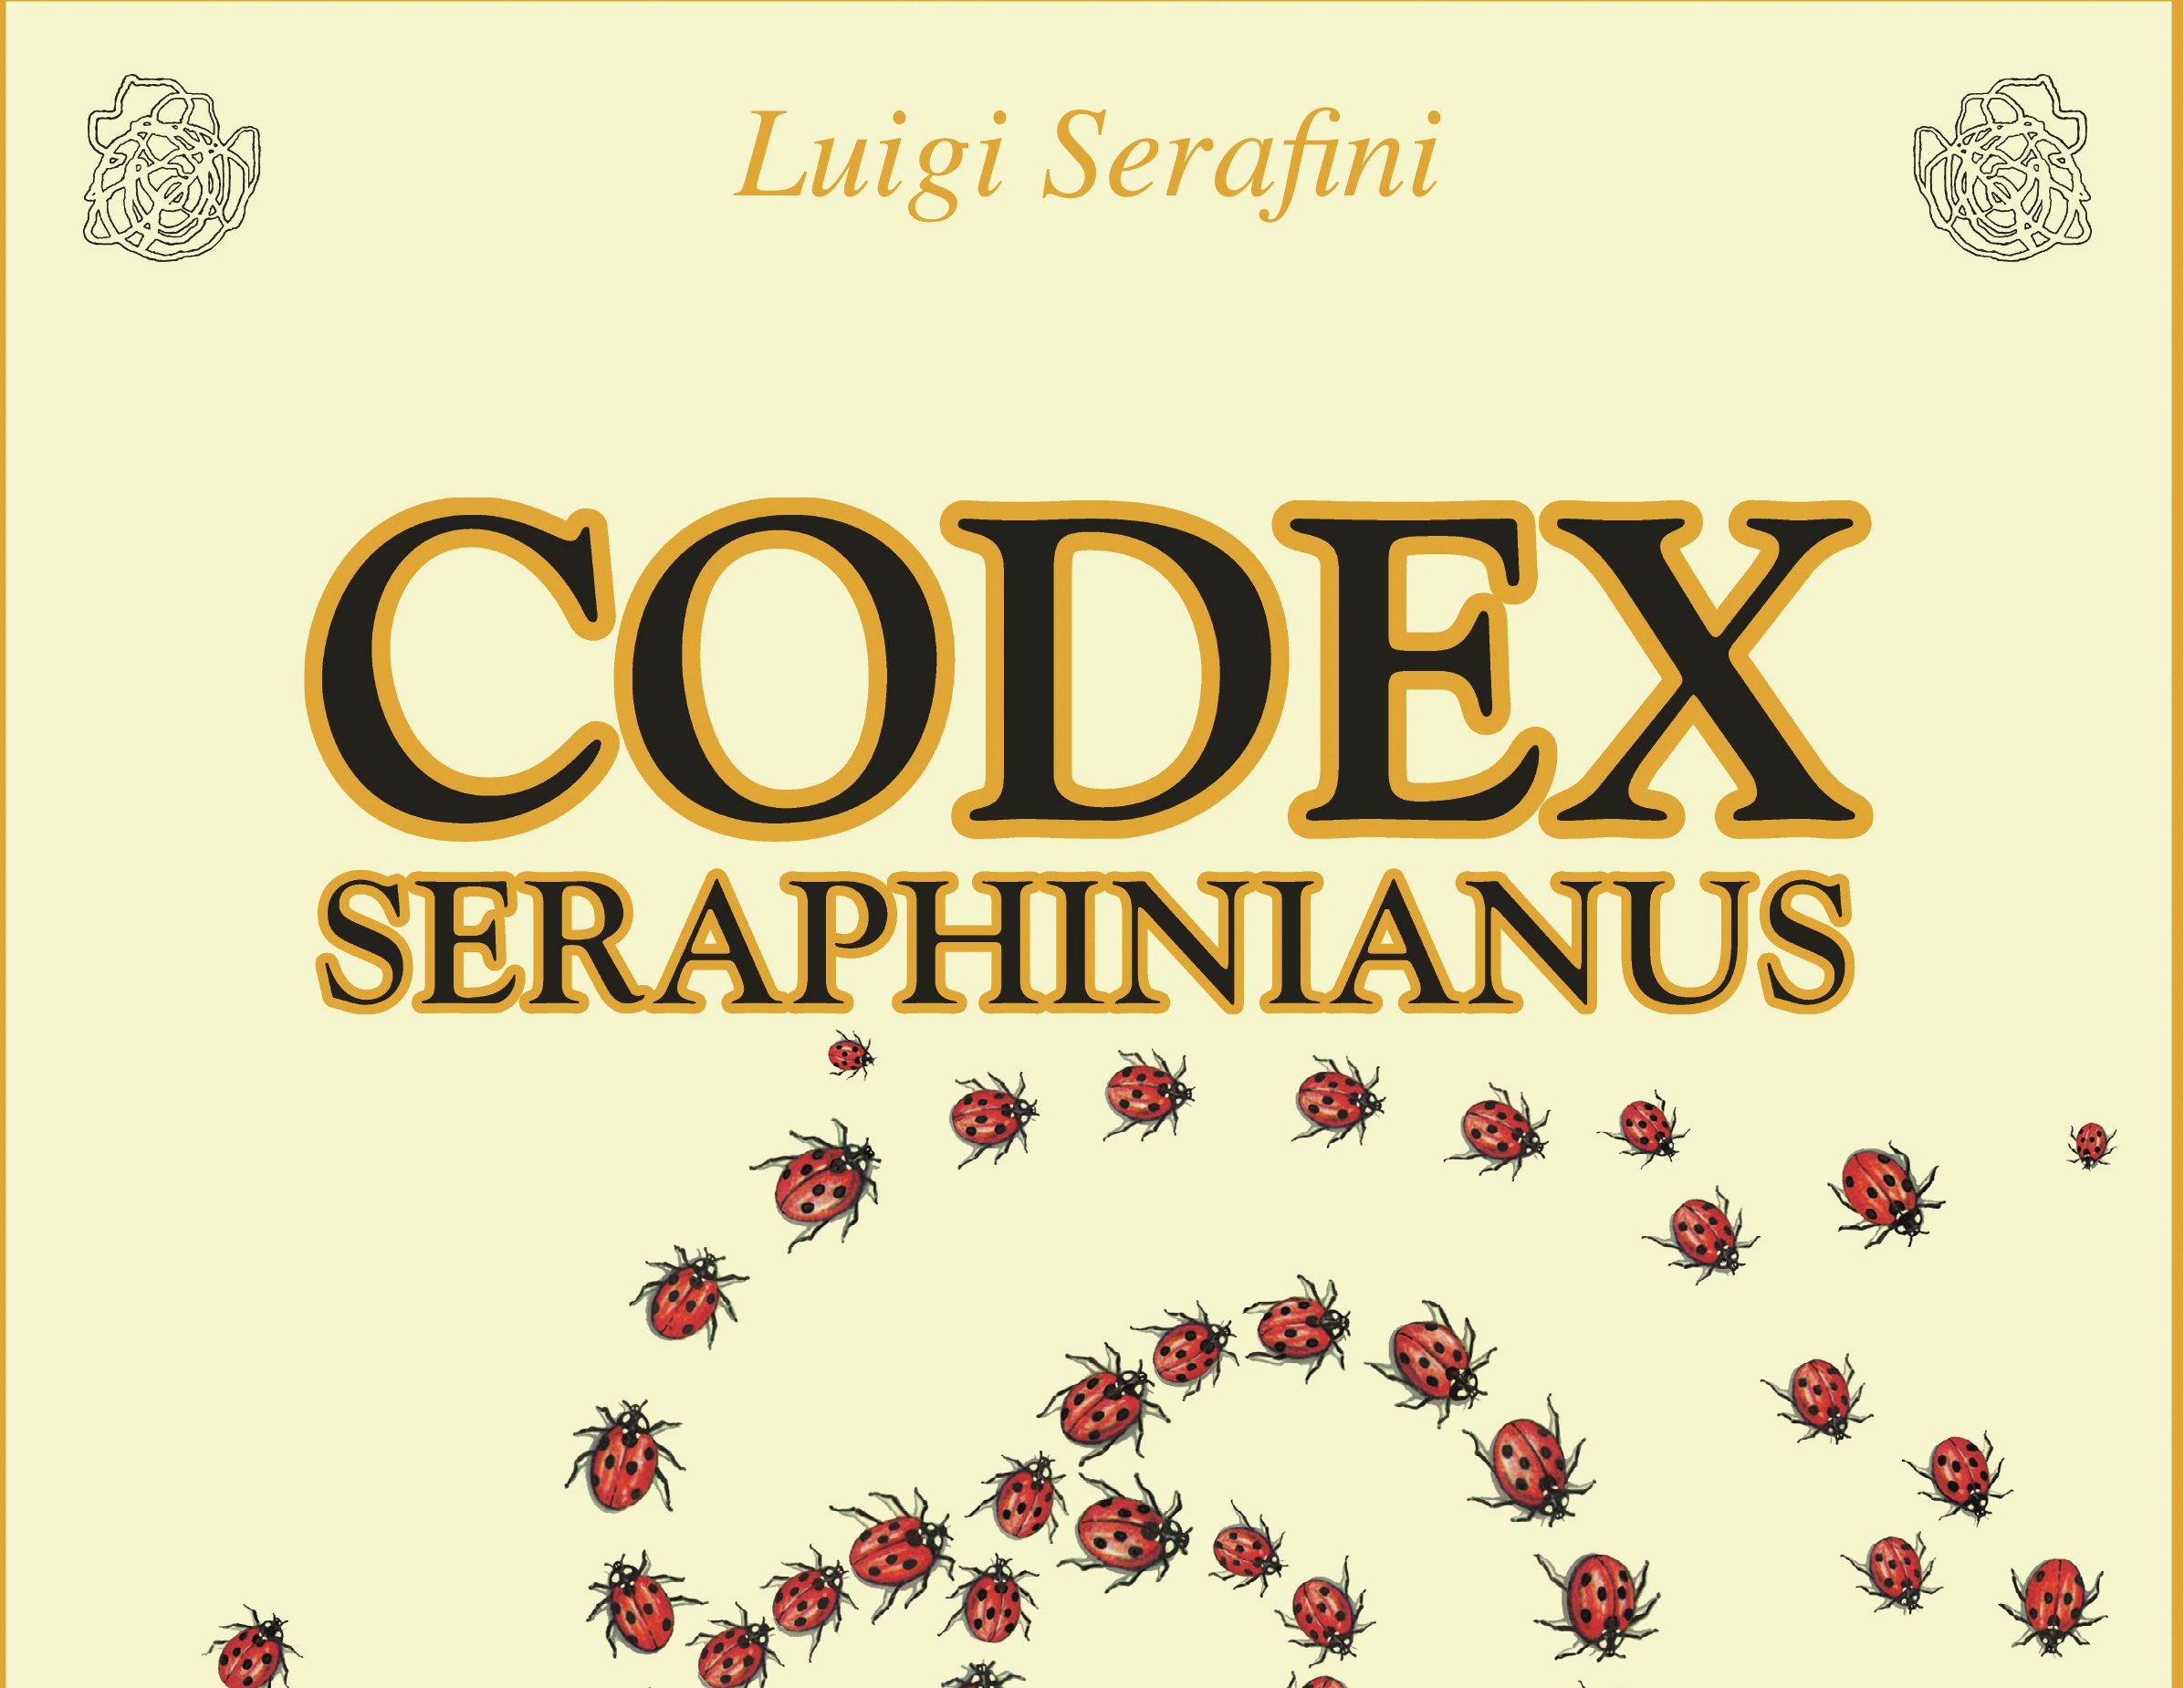 Nuova edizione del Codex Seraphinianus, l’enciclopedia visionaria di Luigi Serafini